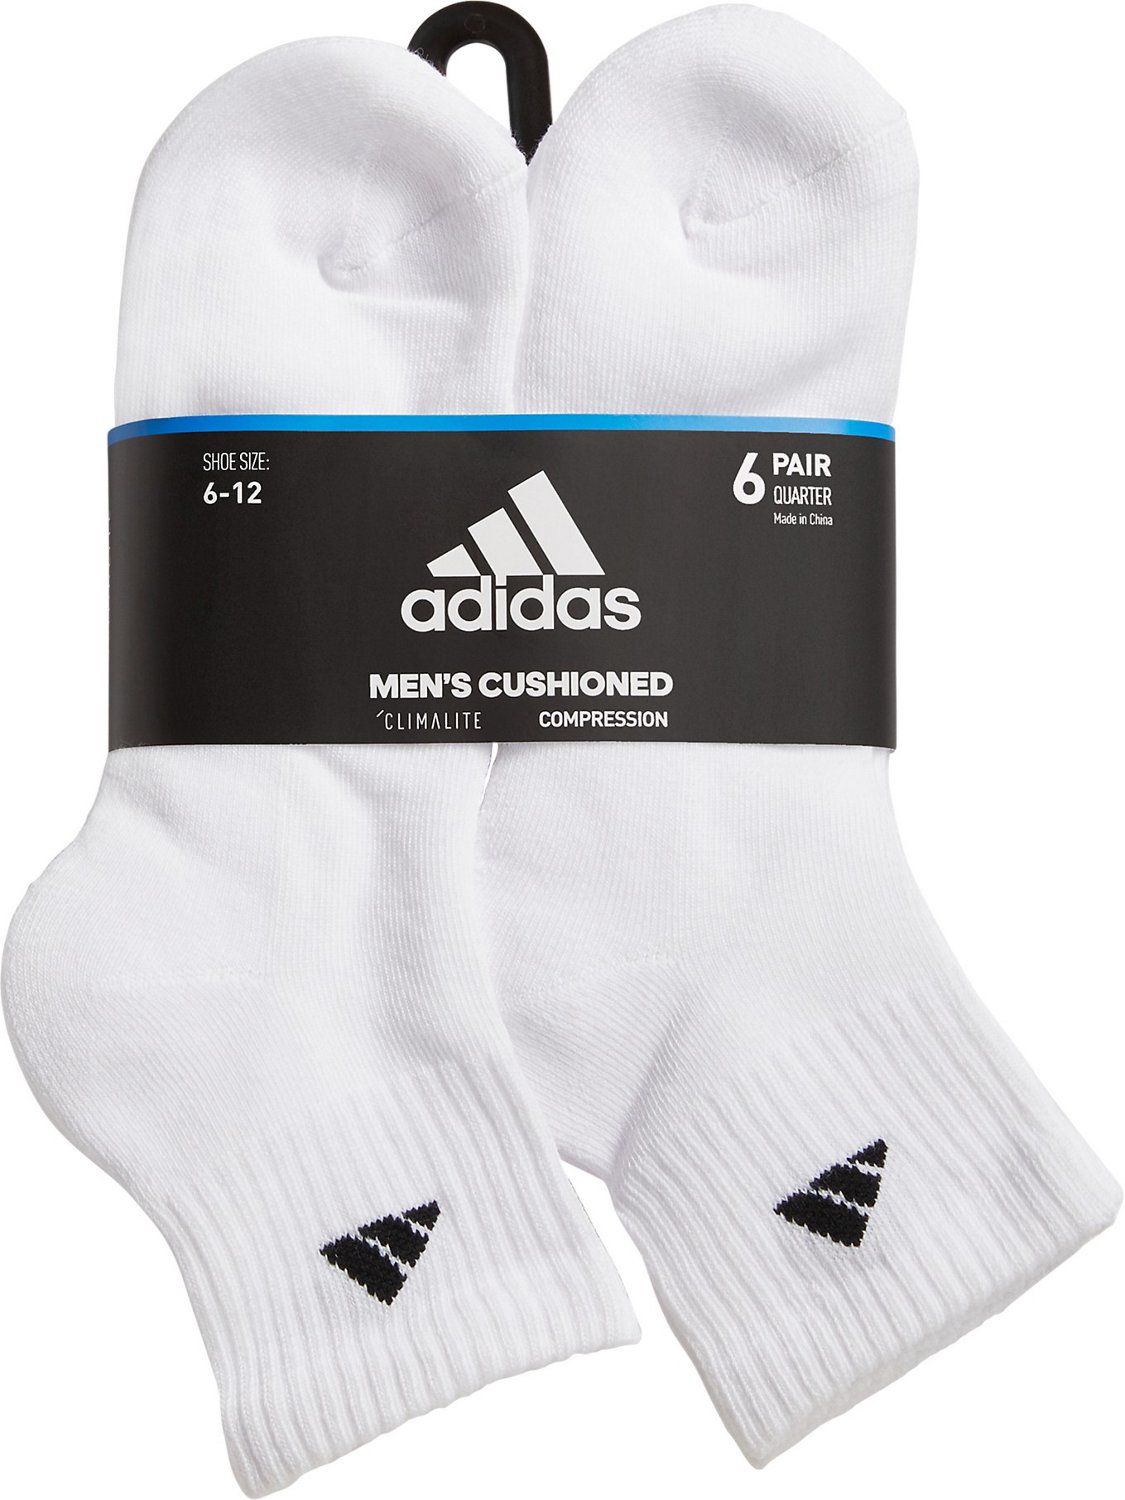 adidas Men's climalite Quarter Socks 6 Pack